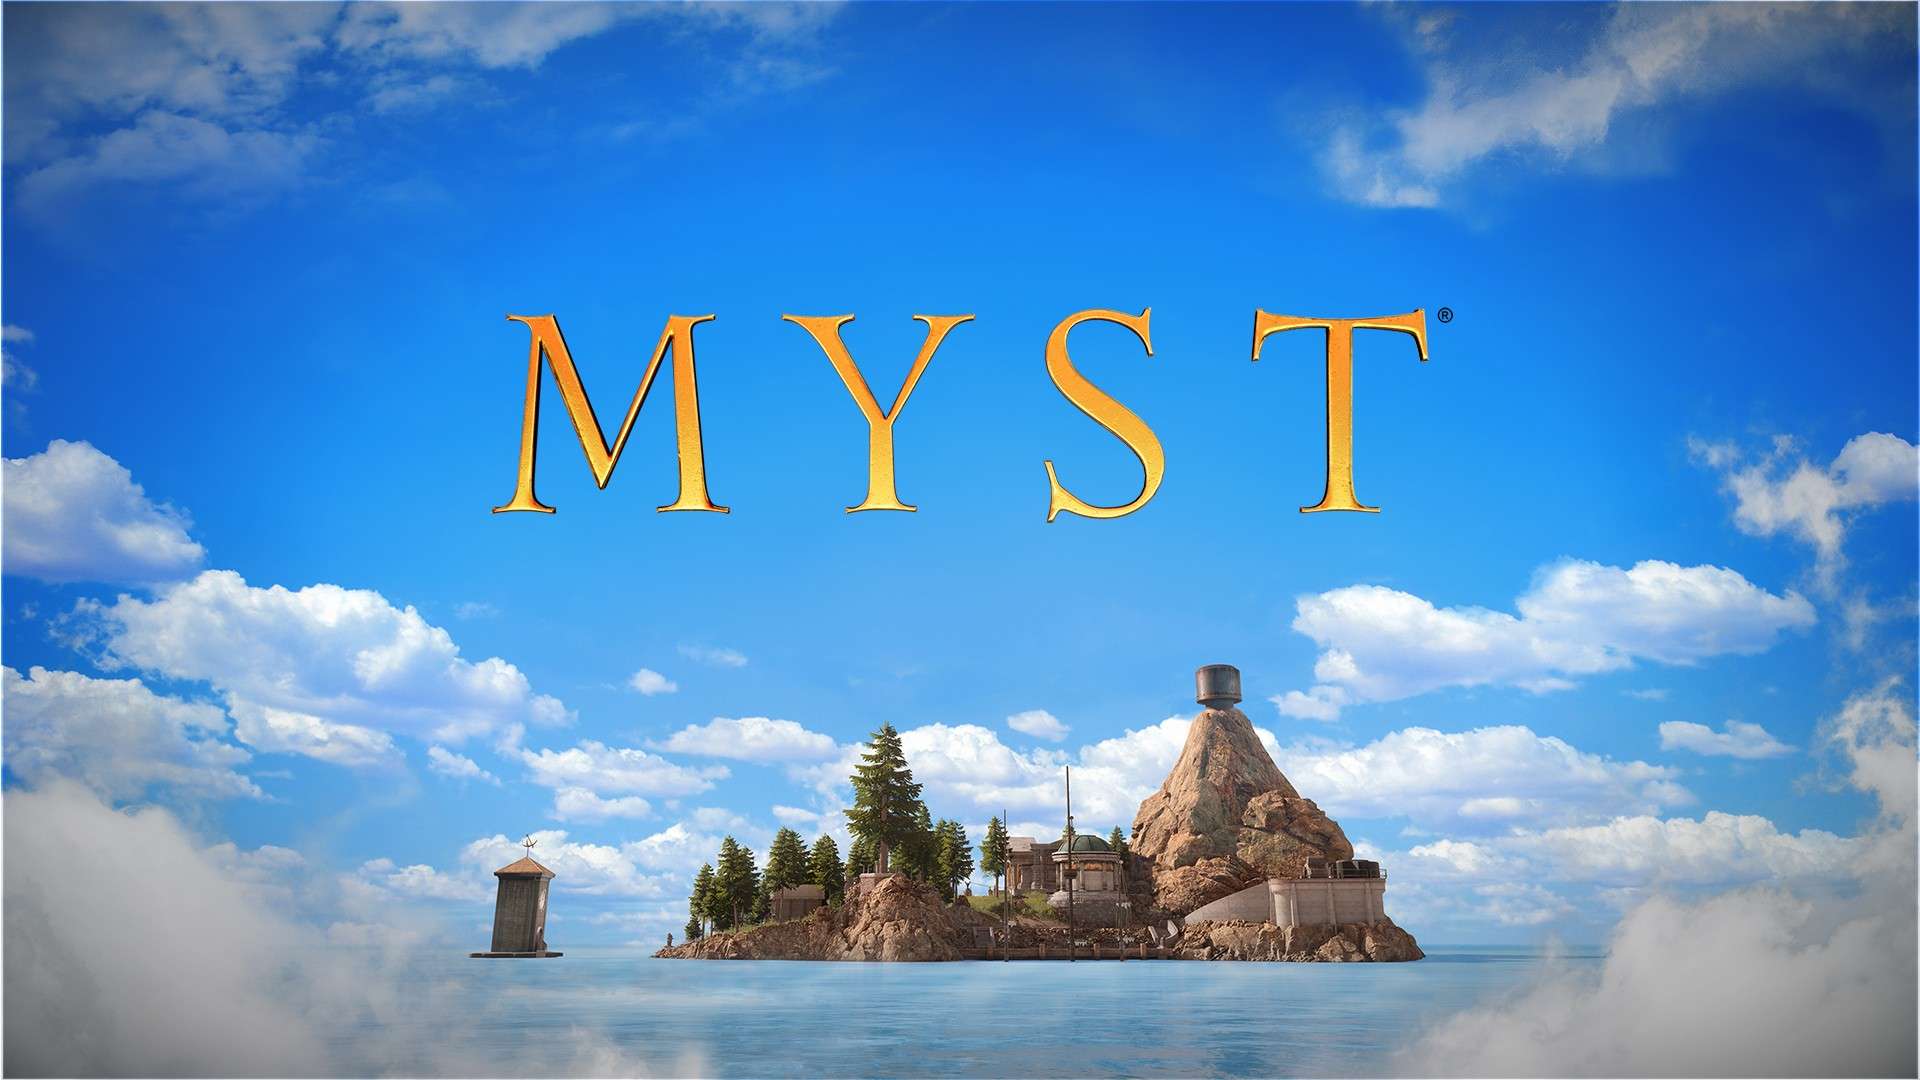 Myst теперь доступен на Xbox с русской локализацией, игра есть в Game Pass